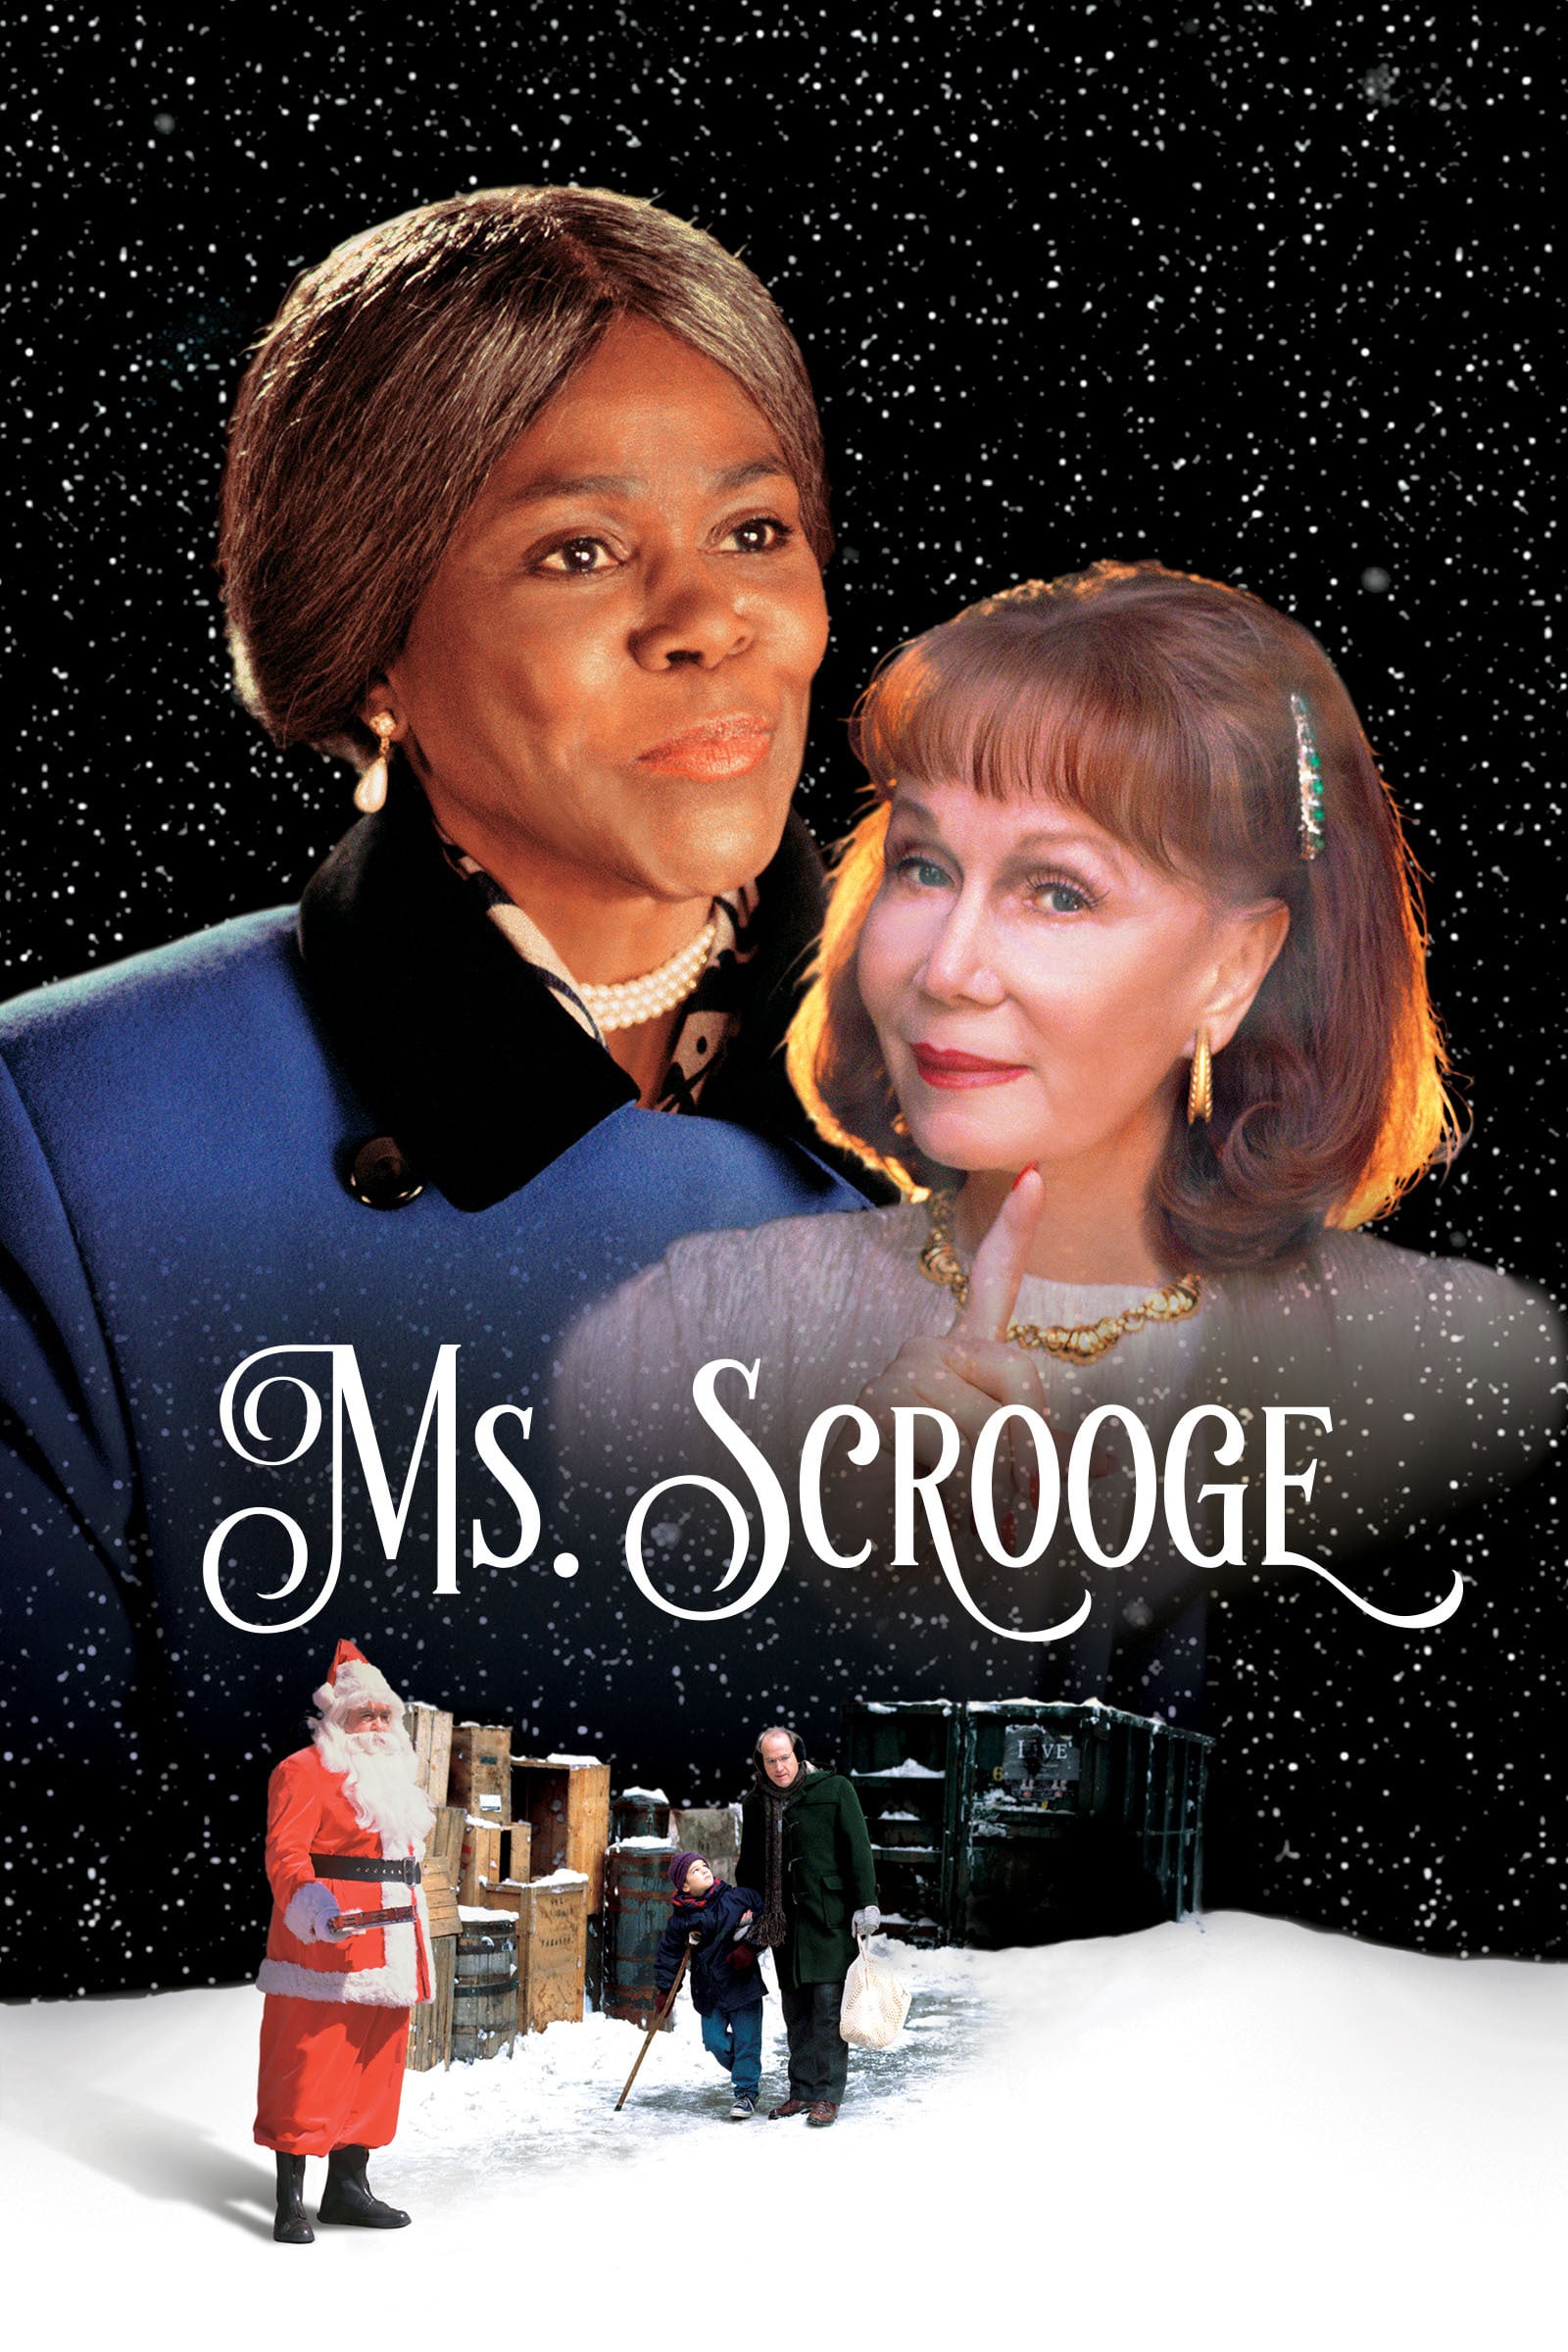 Ms. Scrooge - Ein wundervoller Engel (1997)